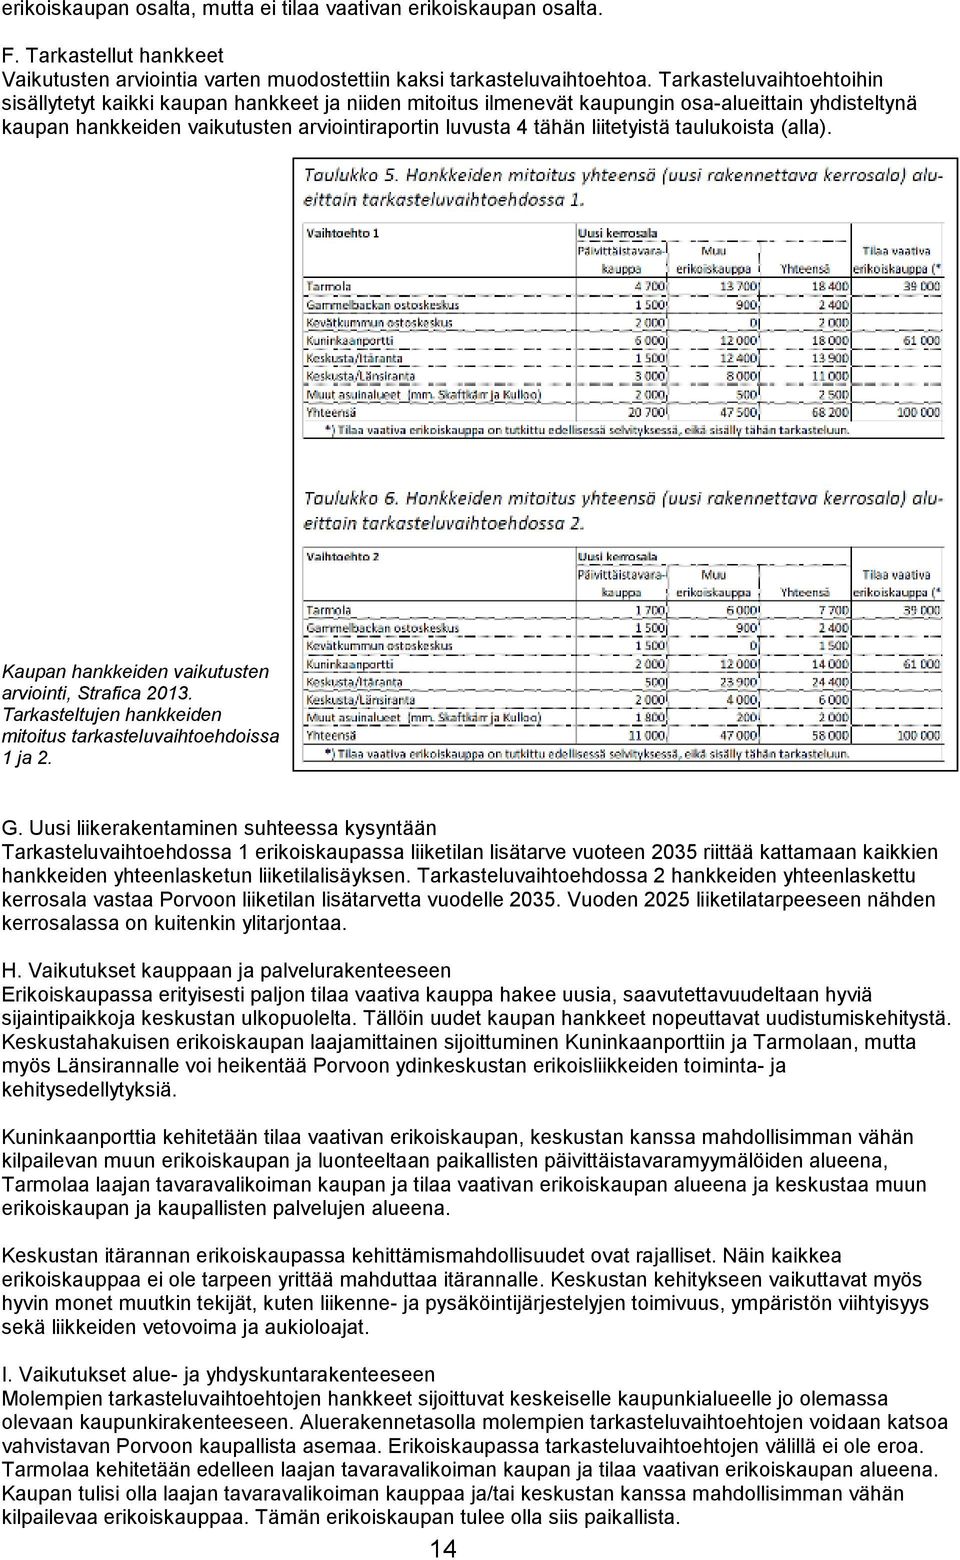 liitetyistä taulukoista (alla). Kaupan hankkeiden vaikutusten arviointi, Strafica 2013. Tarkasteltujen hankkeiden mitoitus tarkasteluvaihtoehdoissa 1 ja 2. G.